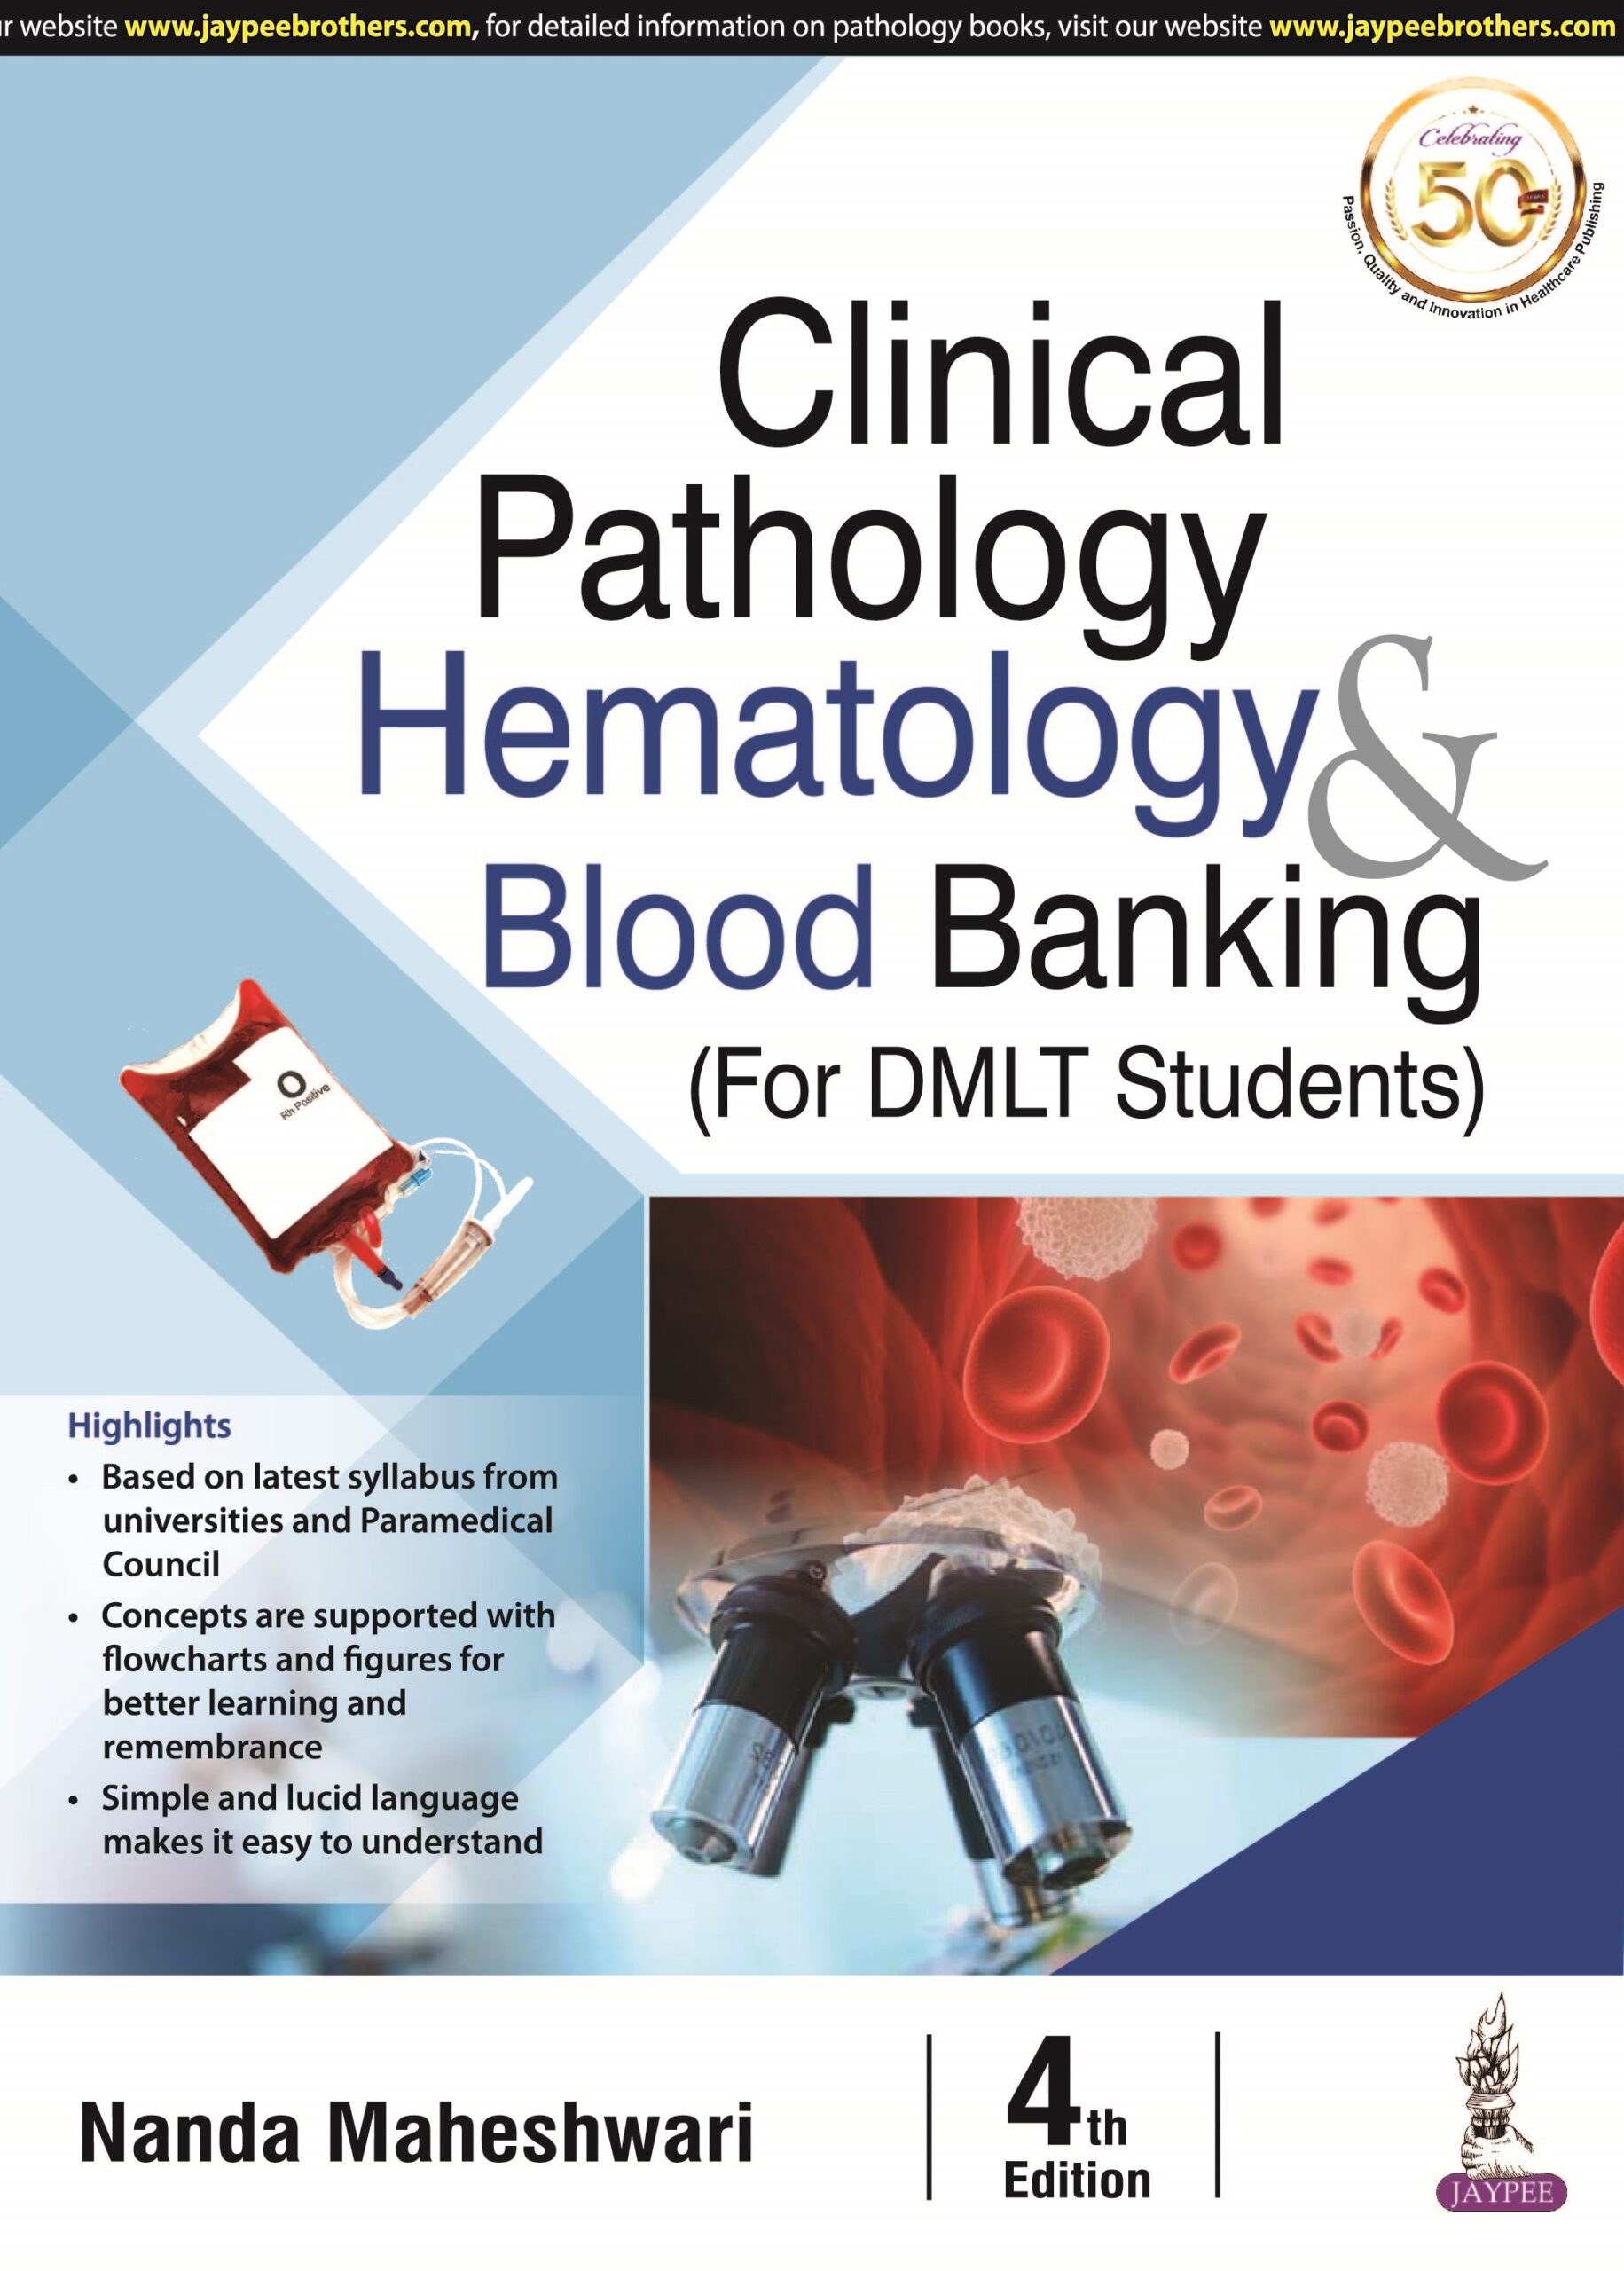 DMLT　Clinical　(For　Pathology,　Banking　Drcart　Hematology　Maheshwari　by　Blood　Students)　Nanda